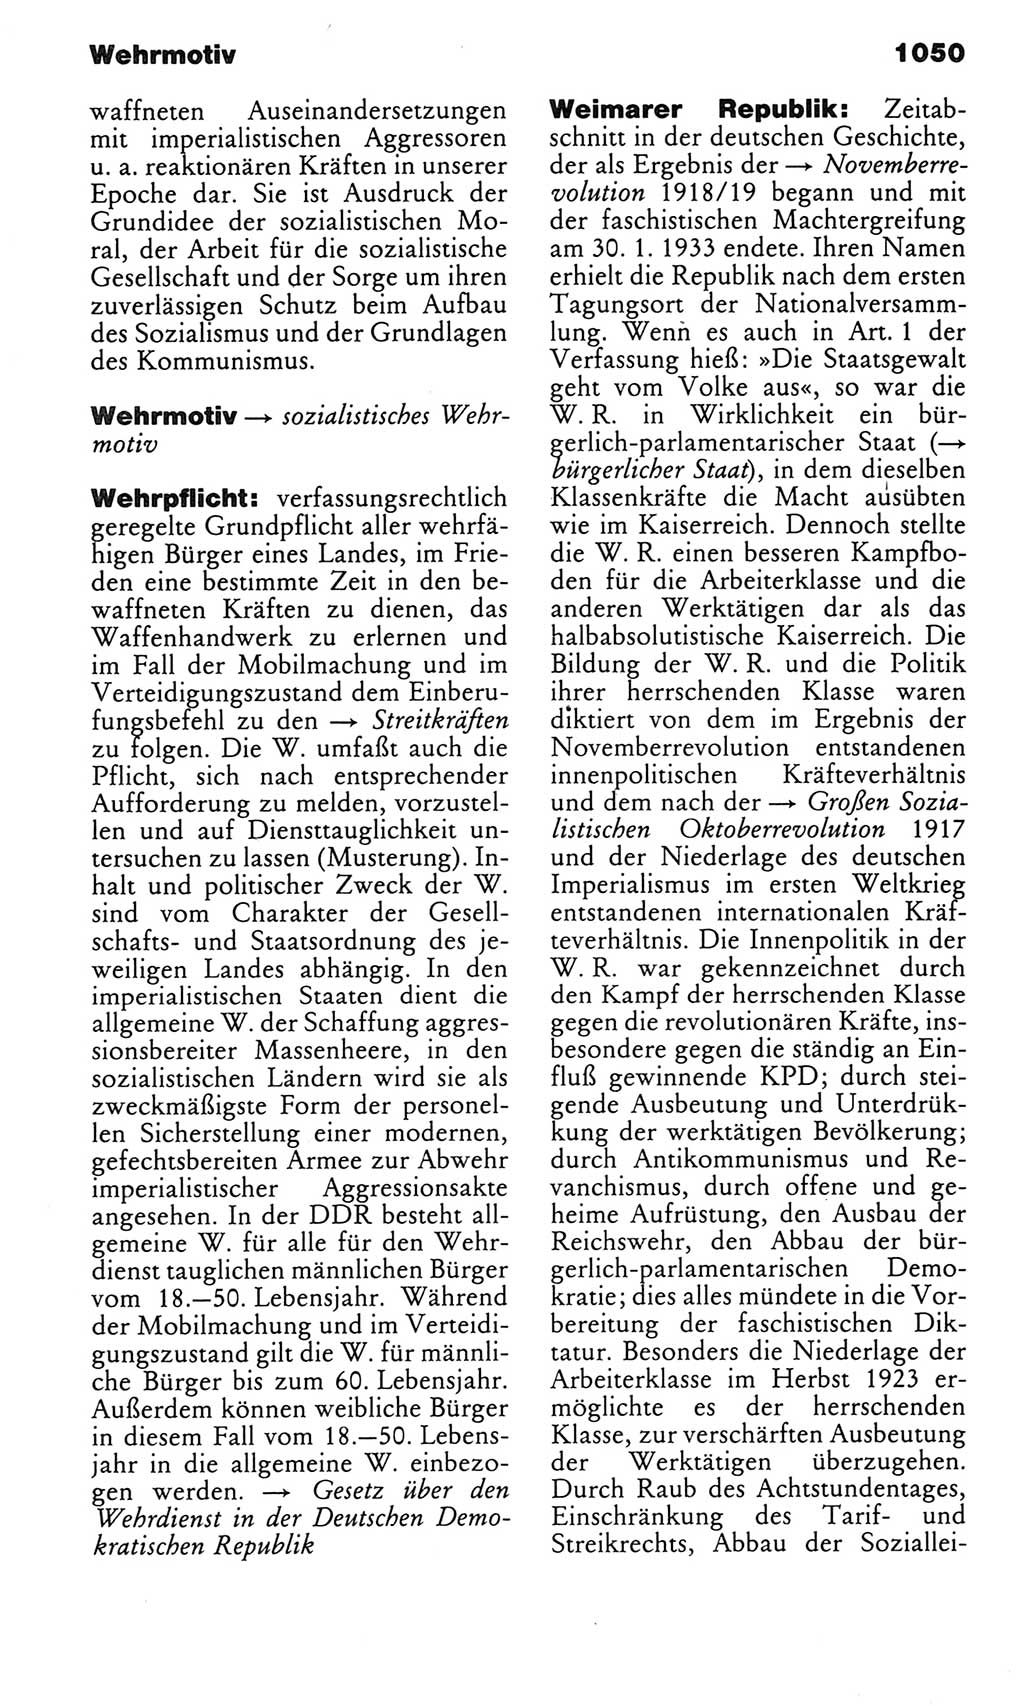 Kleines politisches Wörterbuch [Deutsche Demokratische Republik (DDR)] 1983, Seite 1050 (Kl. pol. Wb. DDR 1983, S. 1050)